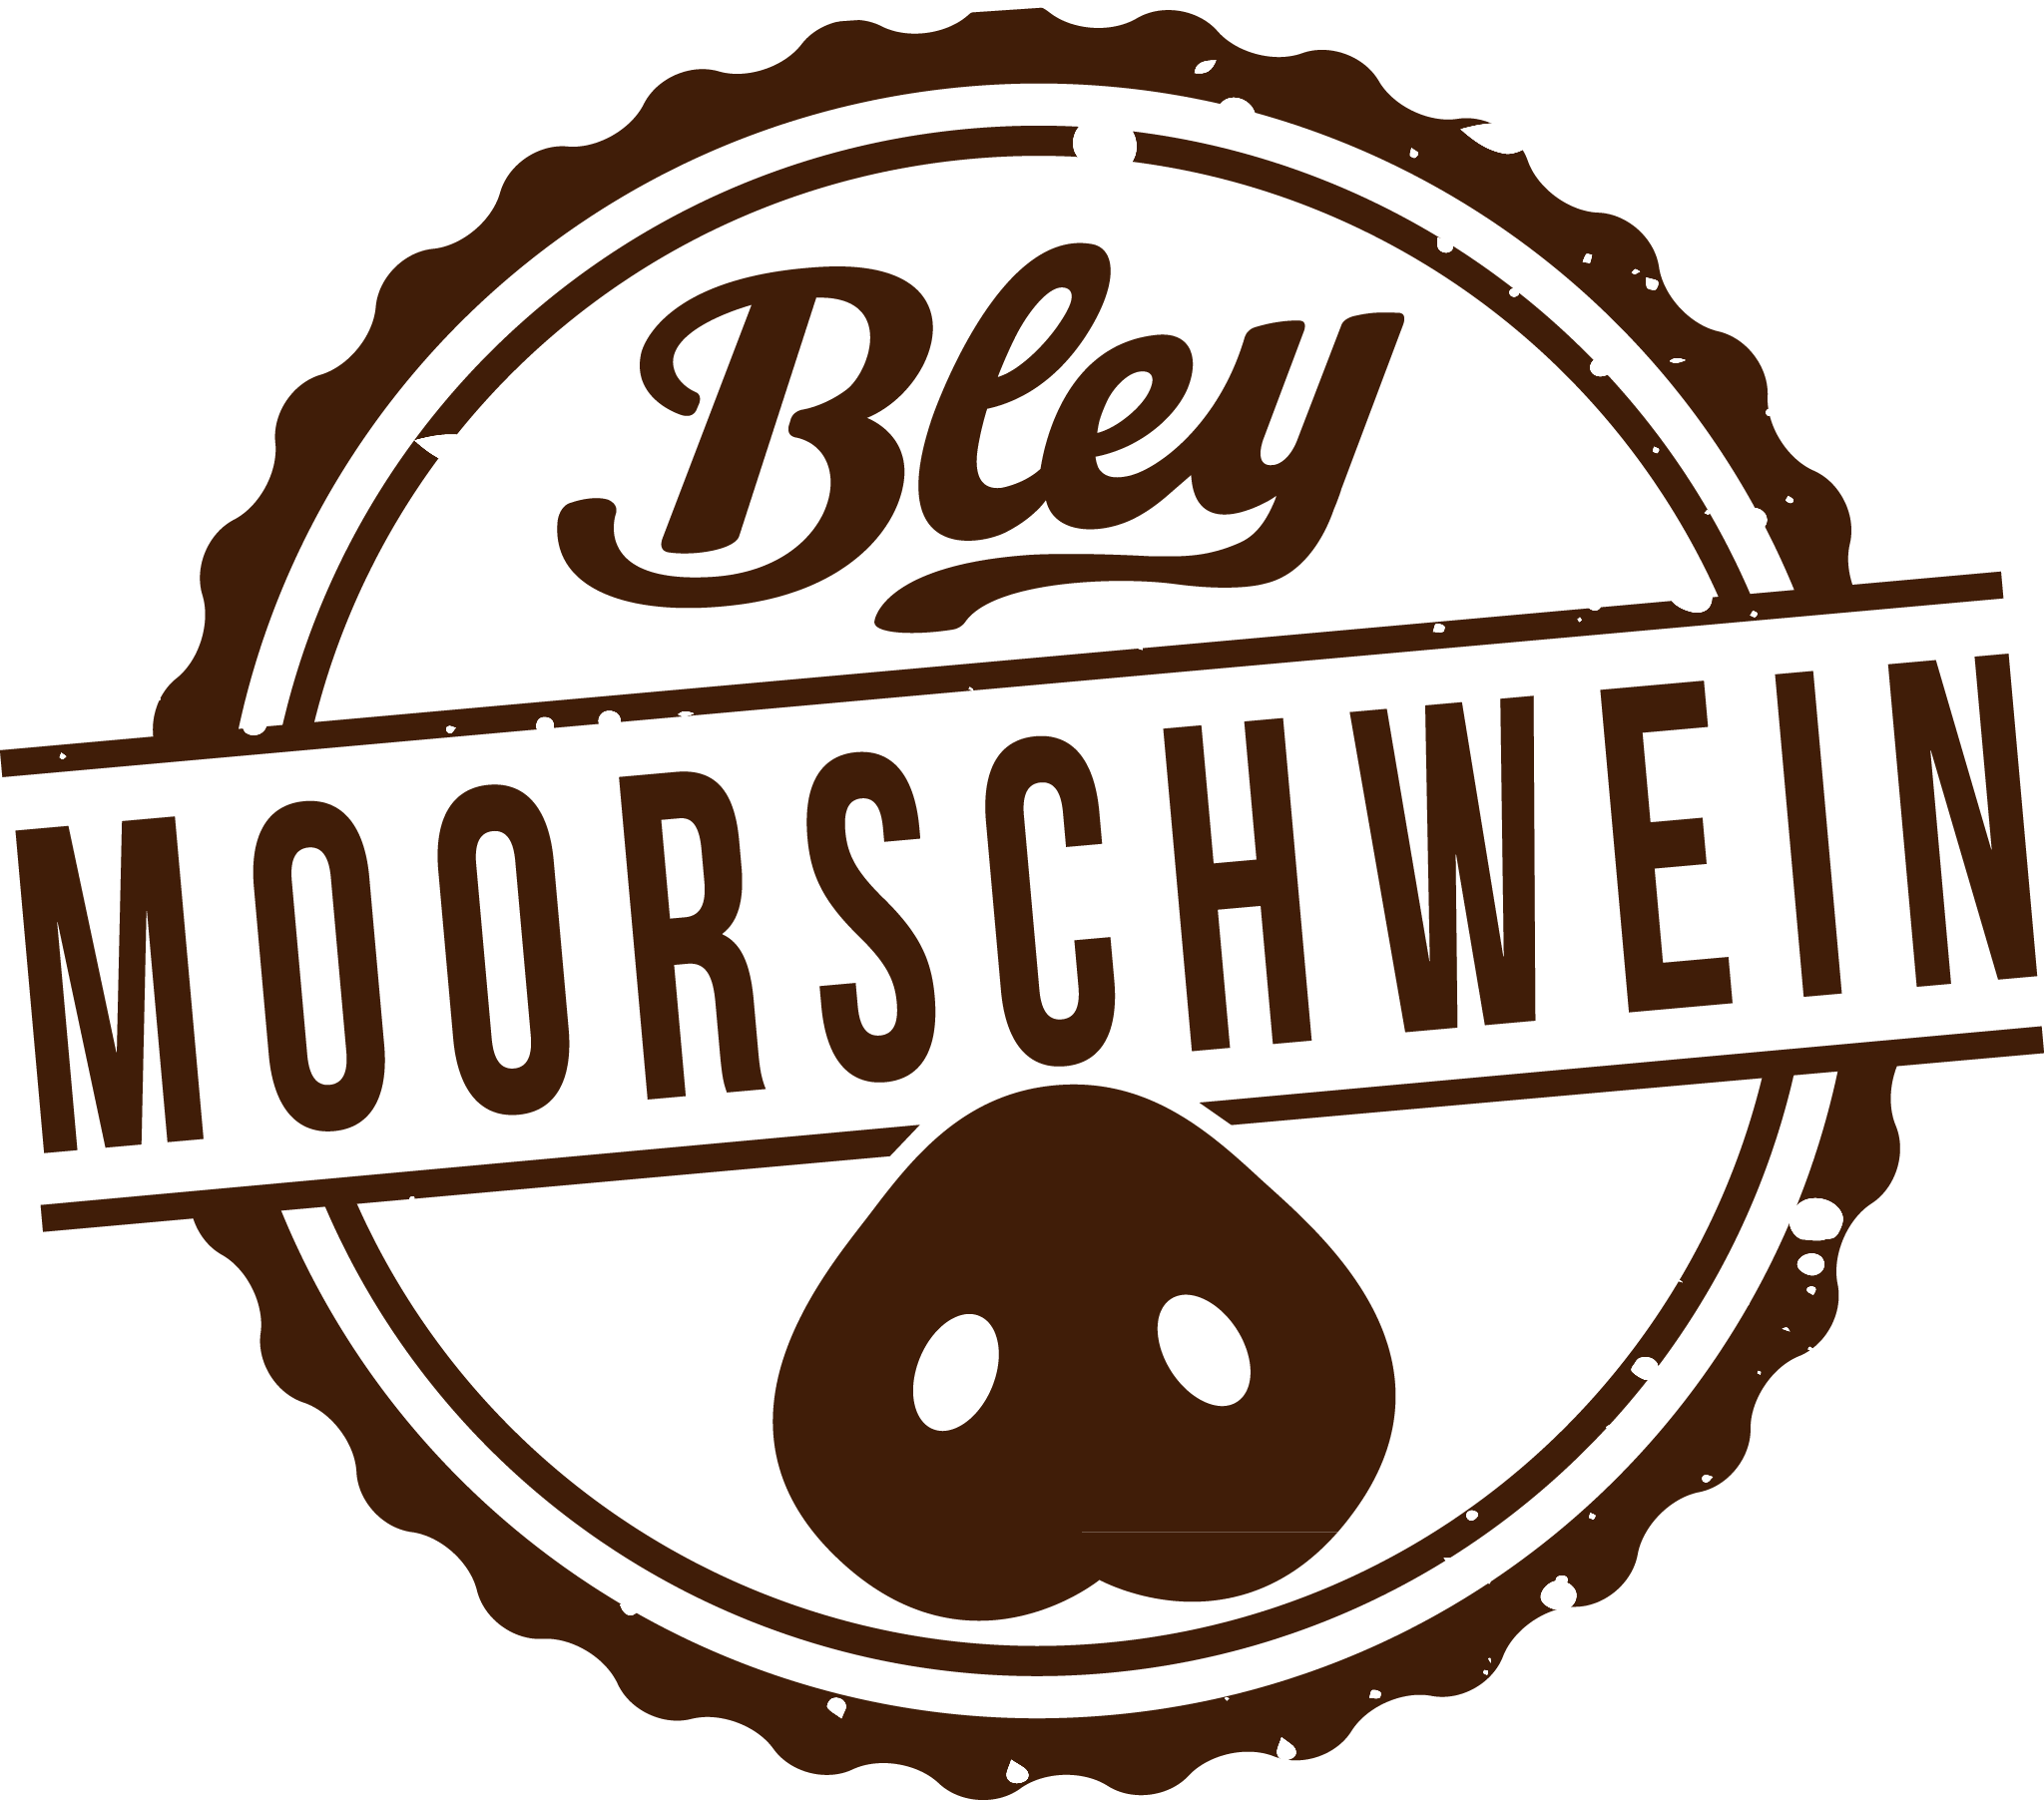 (c) Bleybestewurst.de